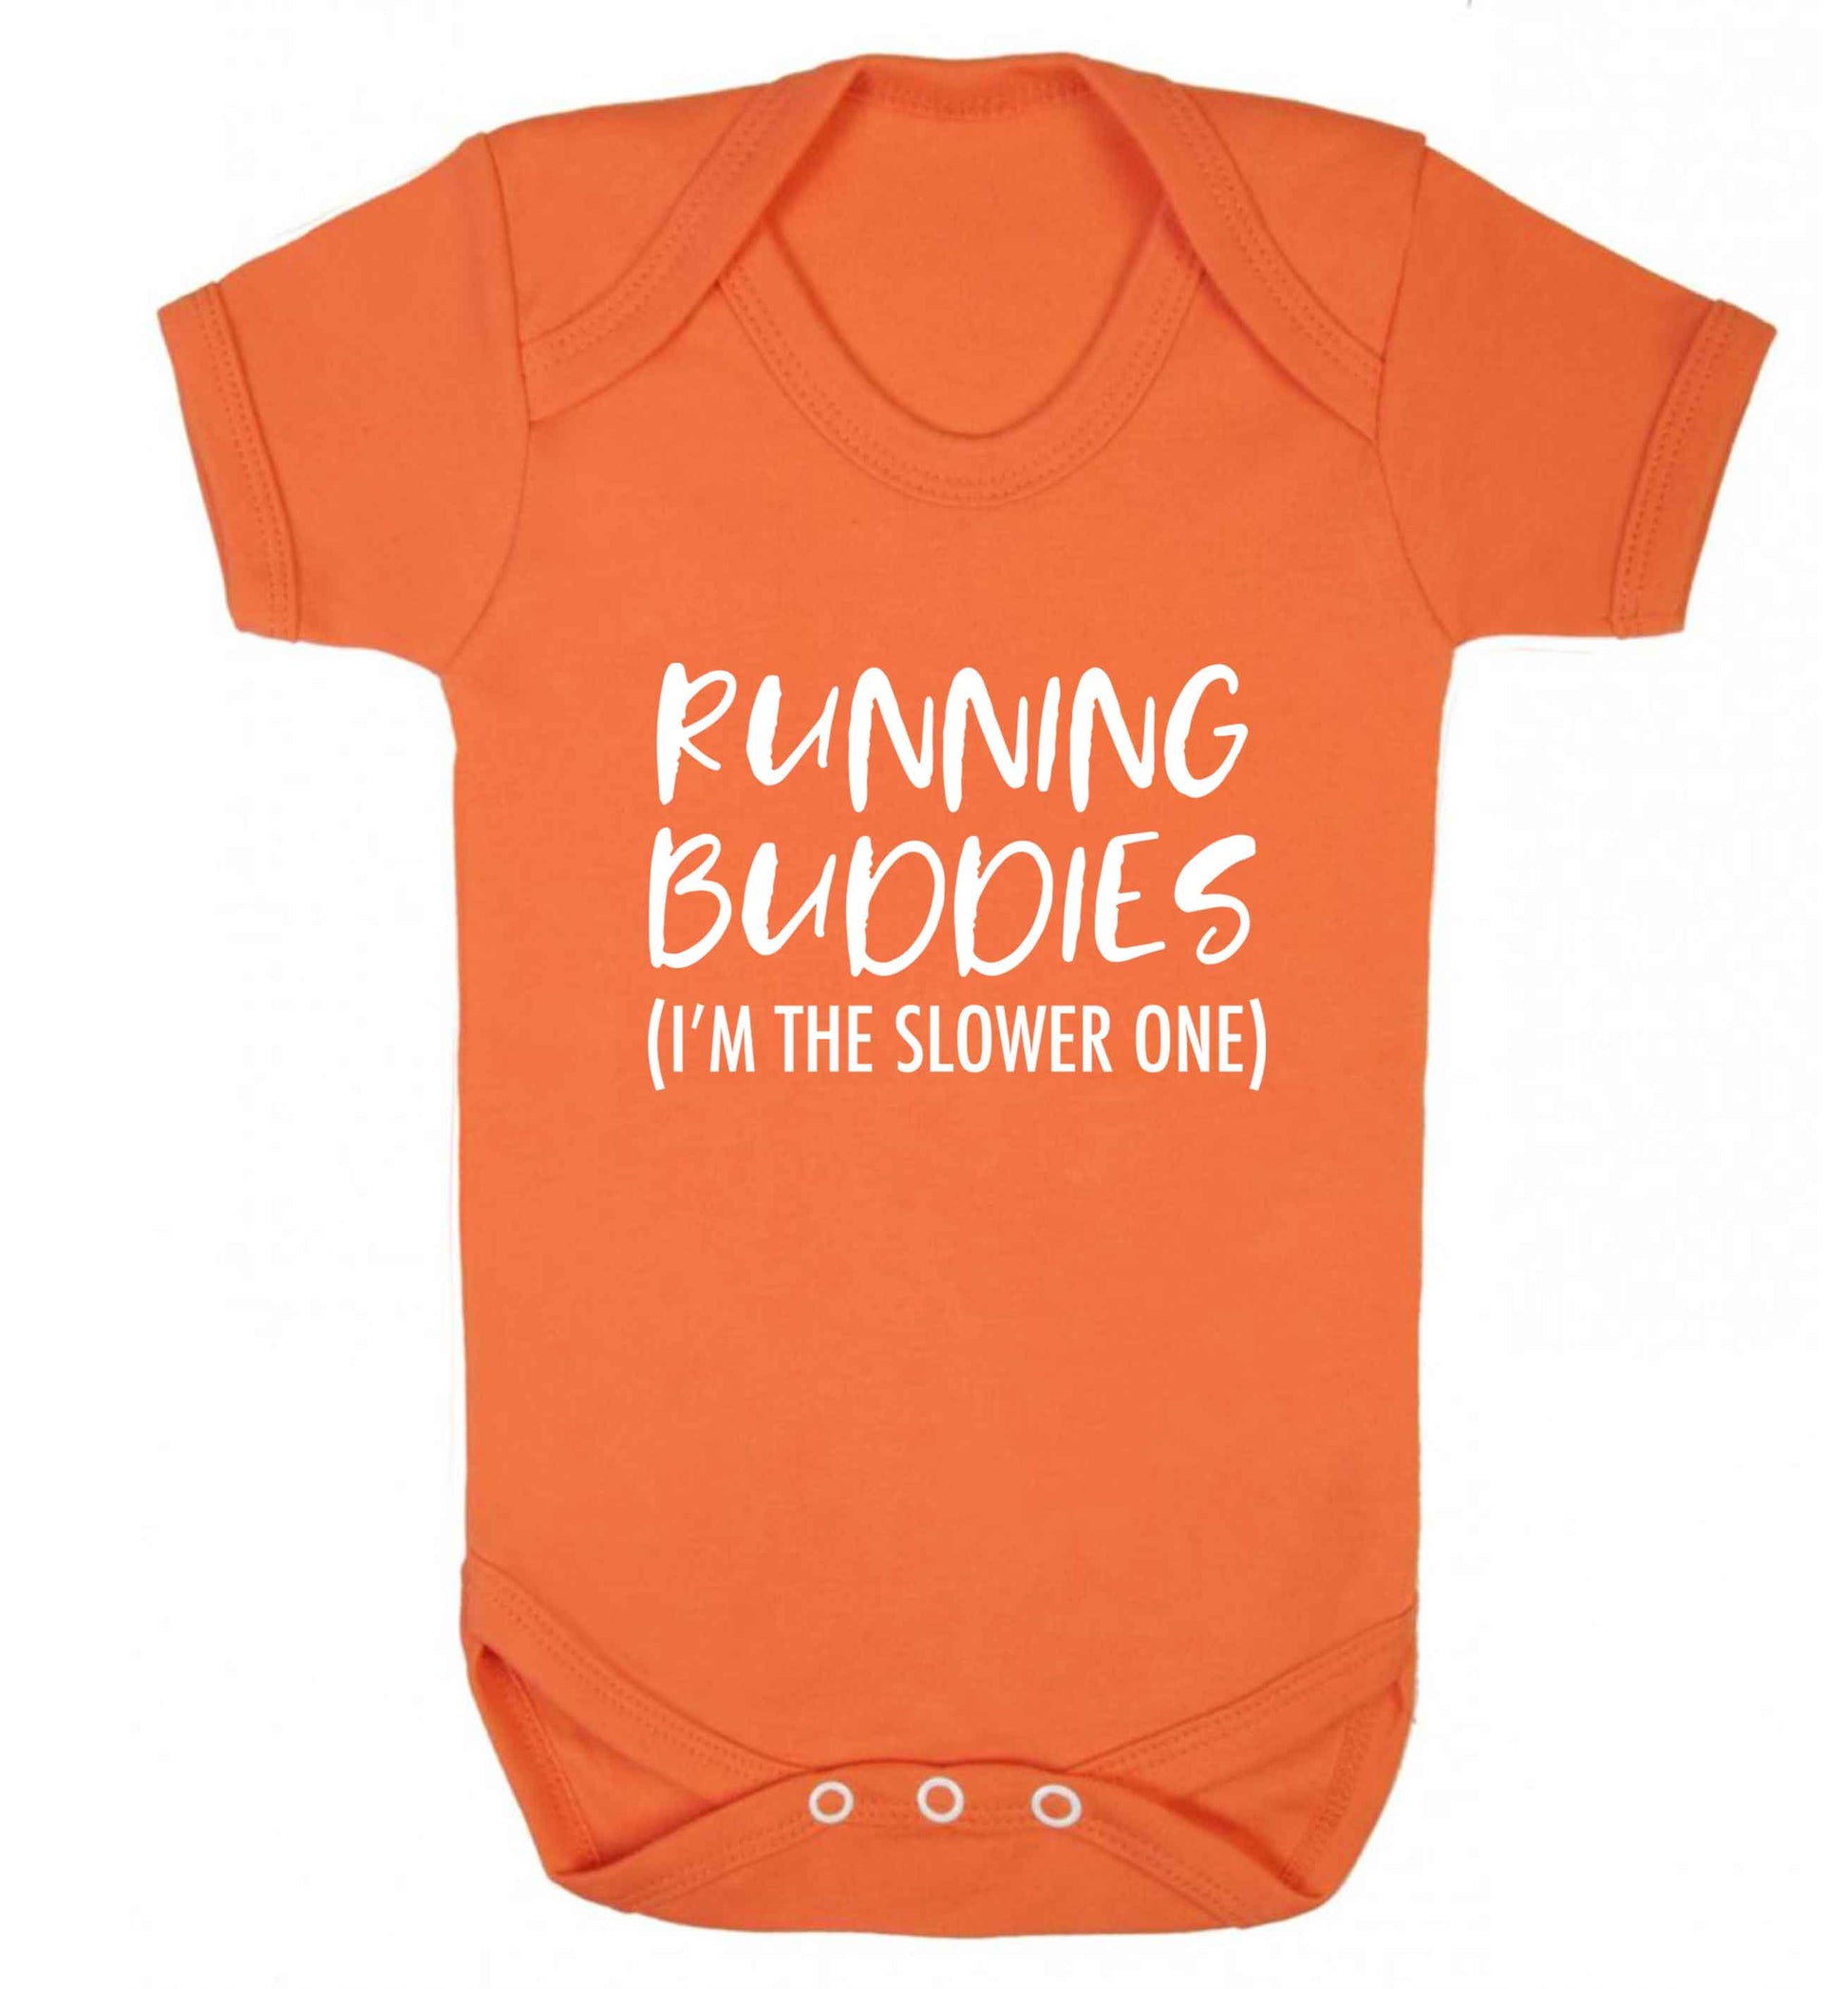 Running buddies (I'm the slower one) baby vest orange 18-24 months